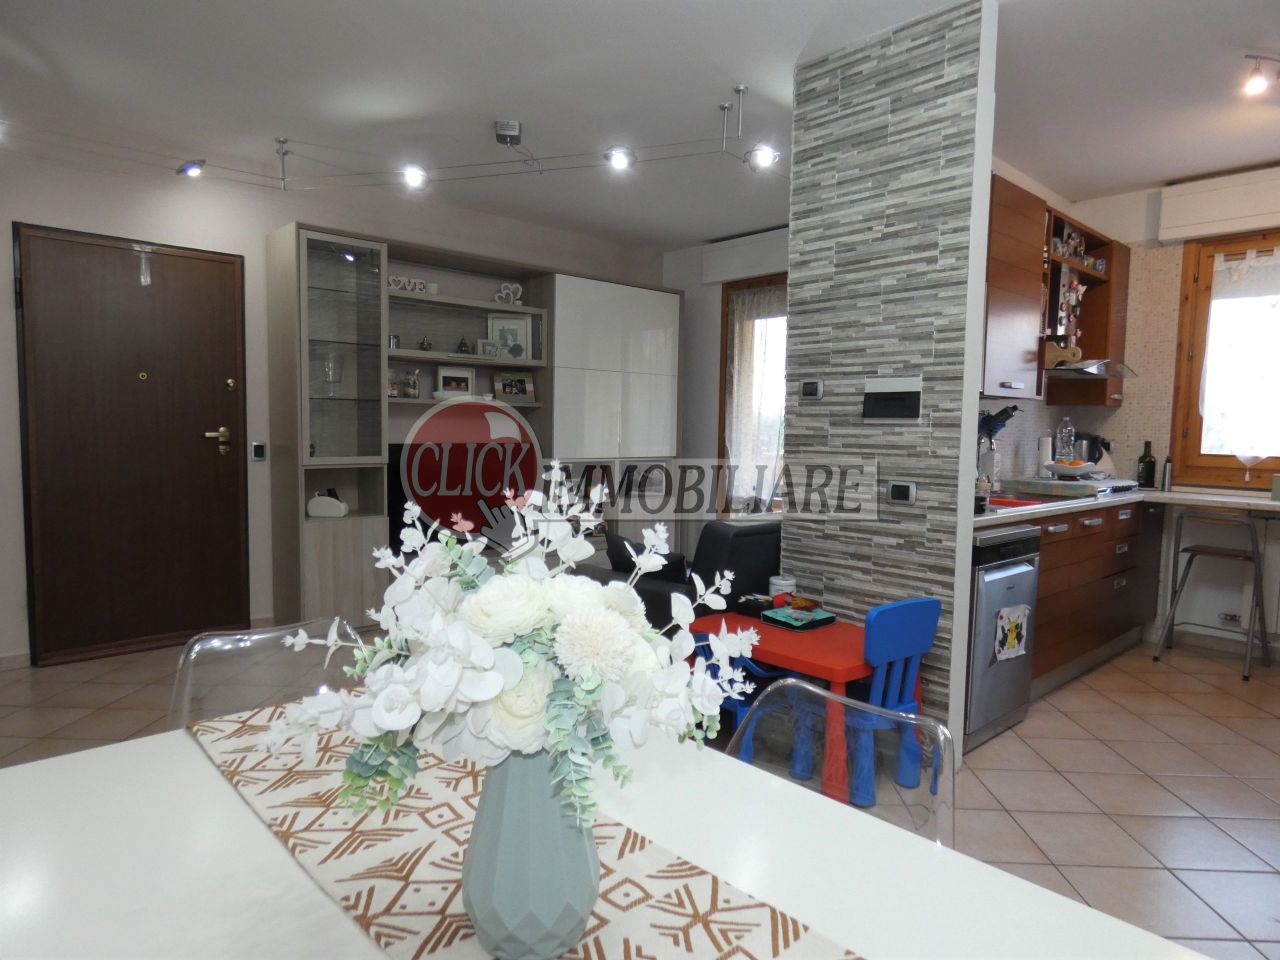 Appartamento in vendita a Borgo San Lorenzo, 4 locali, prezzo € 149.000 | PortaleAgenzieImmobiliari.it